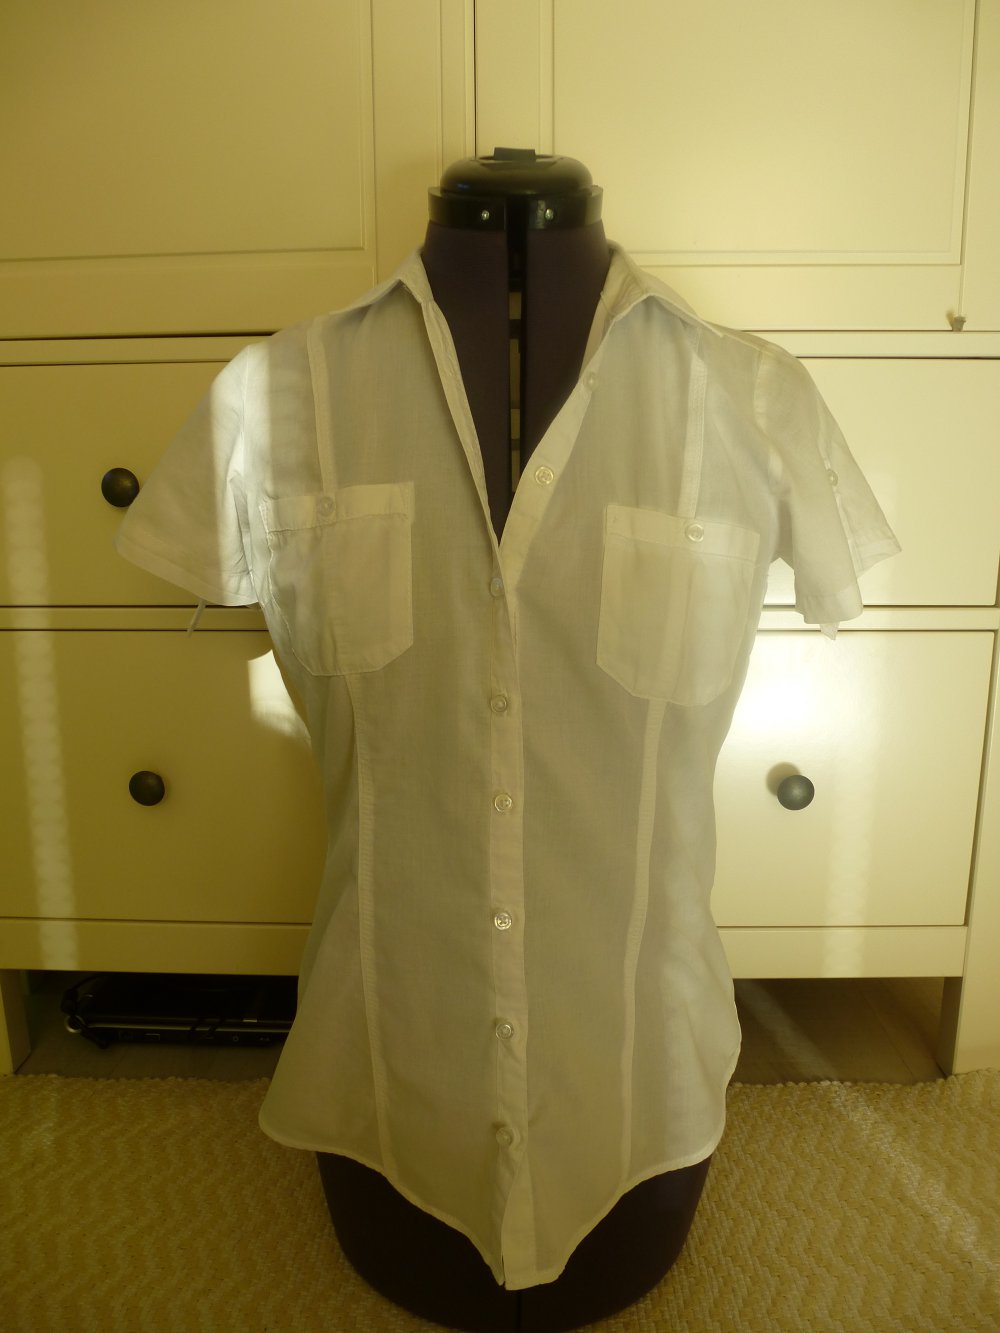 Weiße Bluse weiß kurzarm kurzärmlig Brusttaschen tailliert